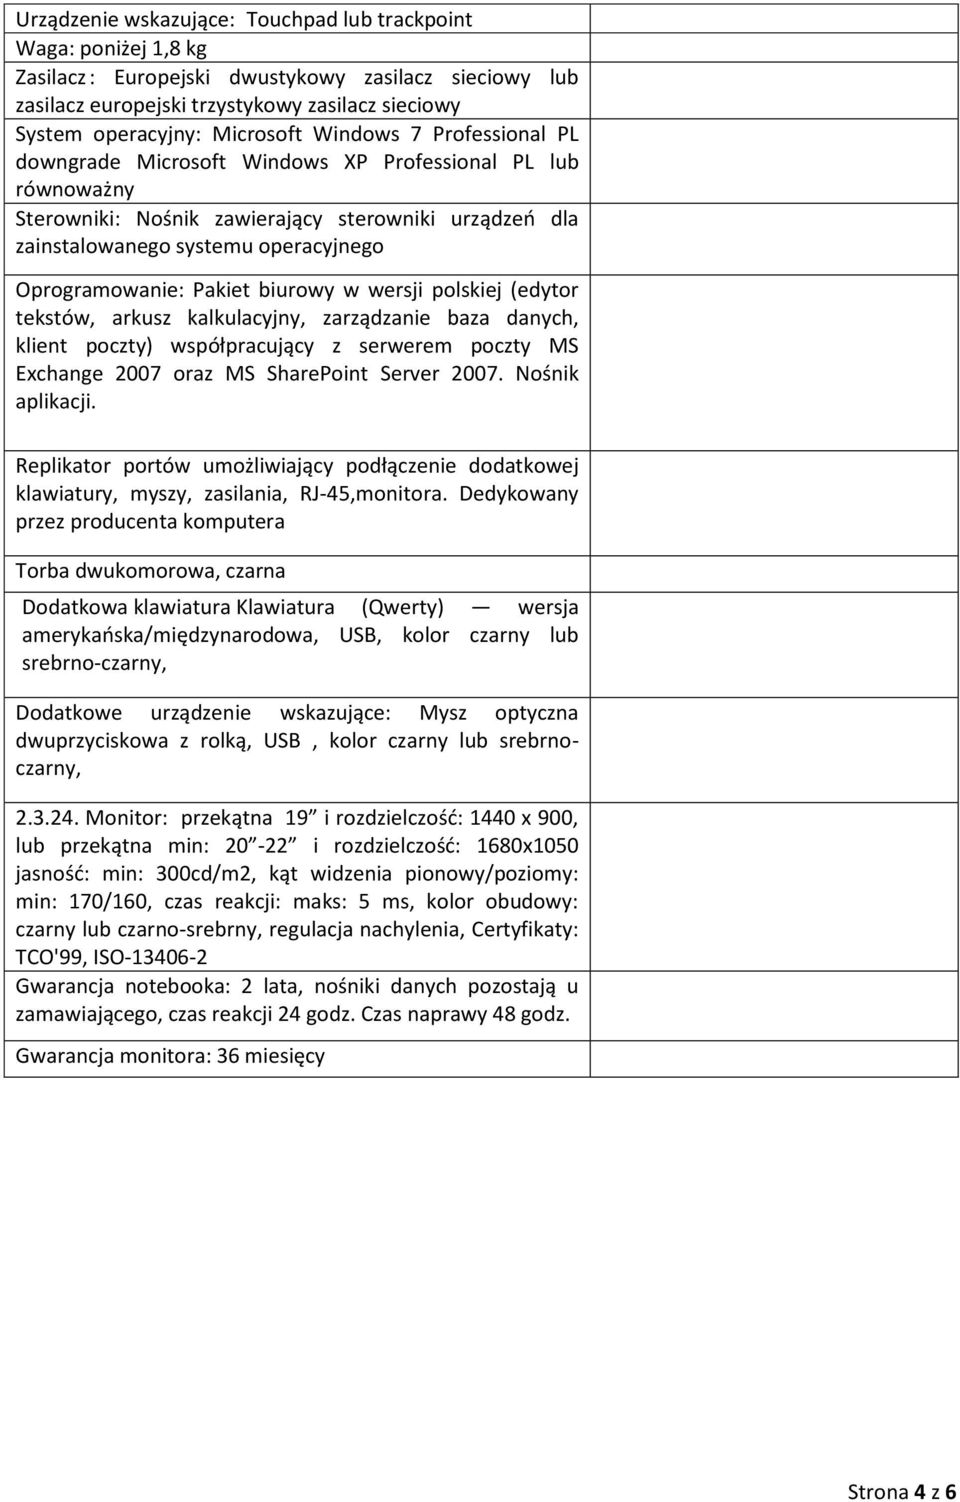 Oprogramowanie: Pakiet biurowy w wersji polskiej (edytor tekstów, arkusz kalkulacyjny, zarządzanie baza danych, klient poczty) współpracujący z serwerem poczty MS Exchange 2007 oraz MS SharePoint